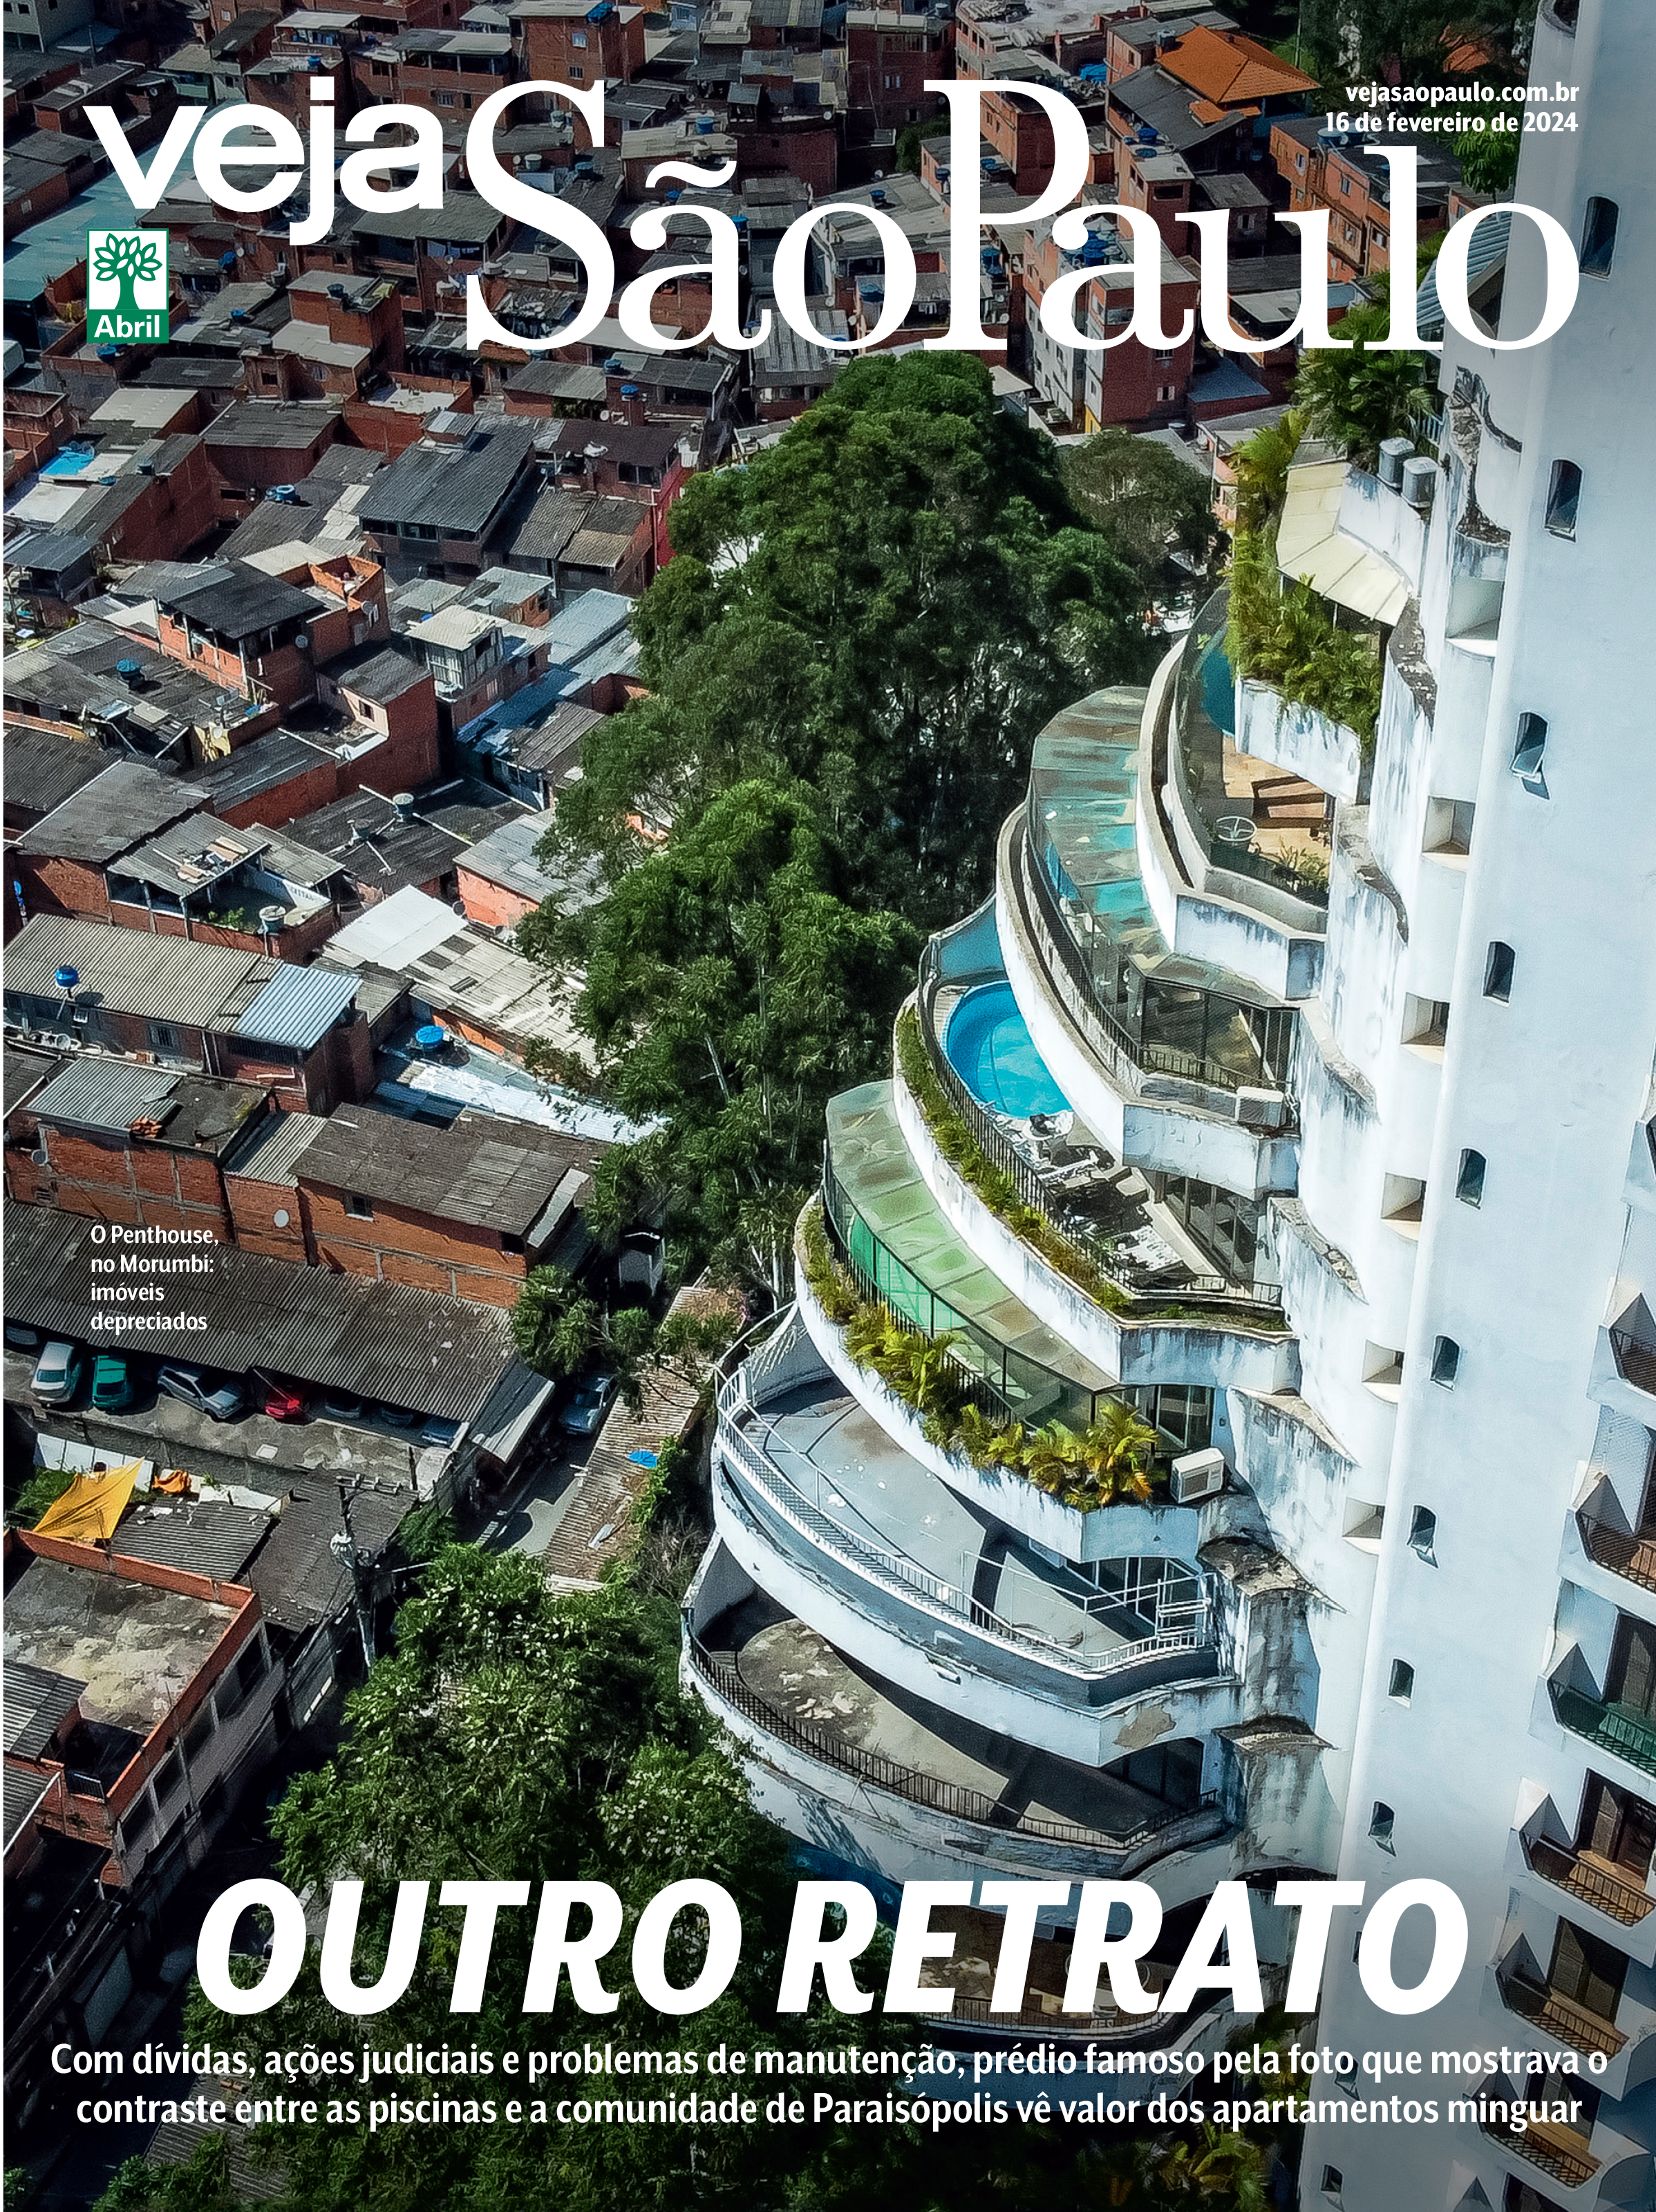 Imagem mostra foto de prédio com varandas com piscinas em espiral e, ao lado, Paraisópolis. Em cima, logo de VEJA São Paulo e, abaixo, título: OUTRO RETRATO